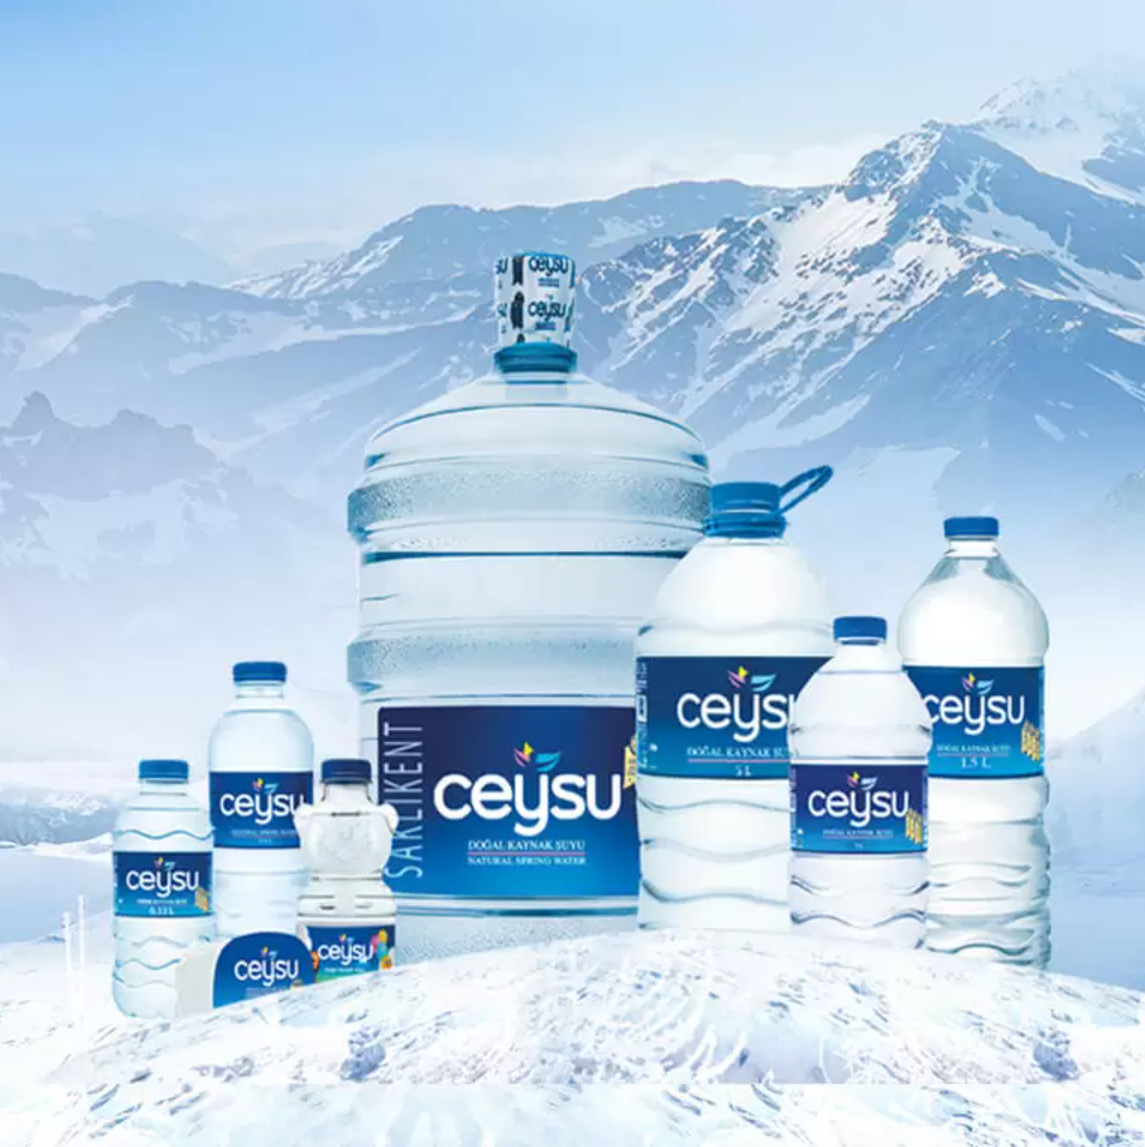 natural-spring-water-supplier-ceysu